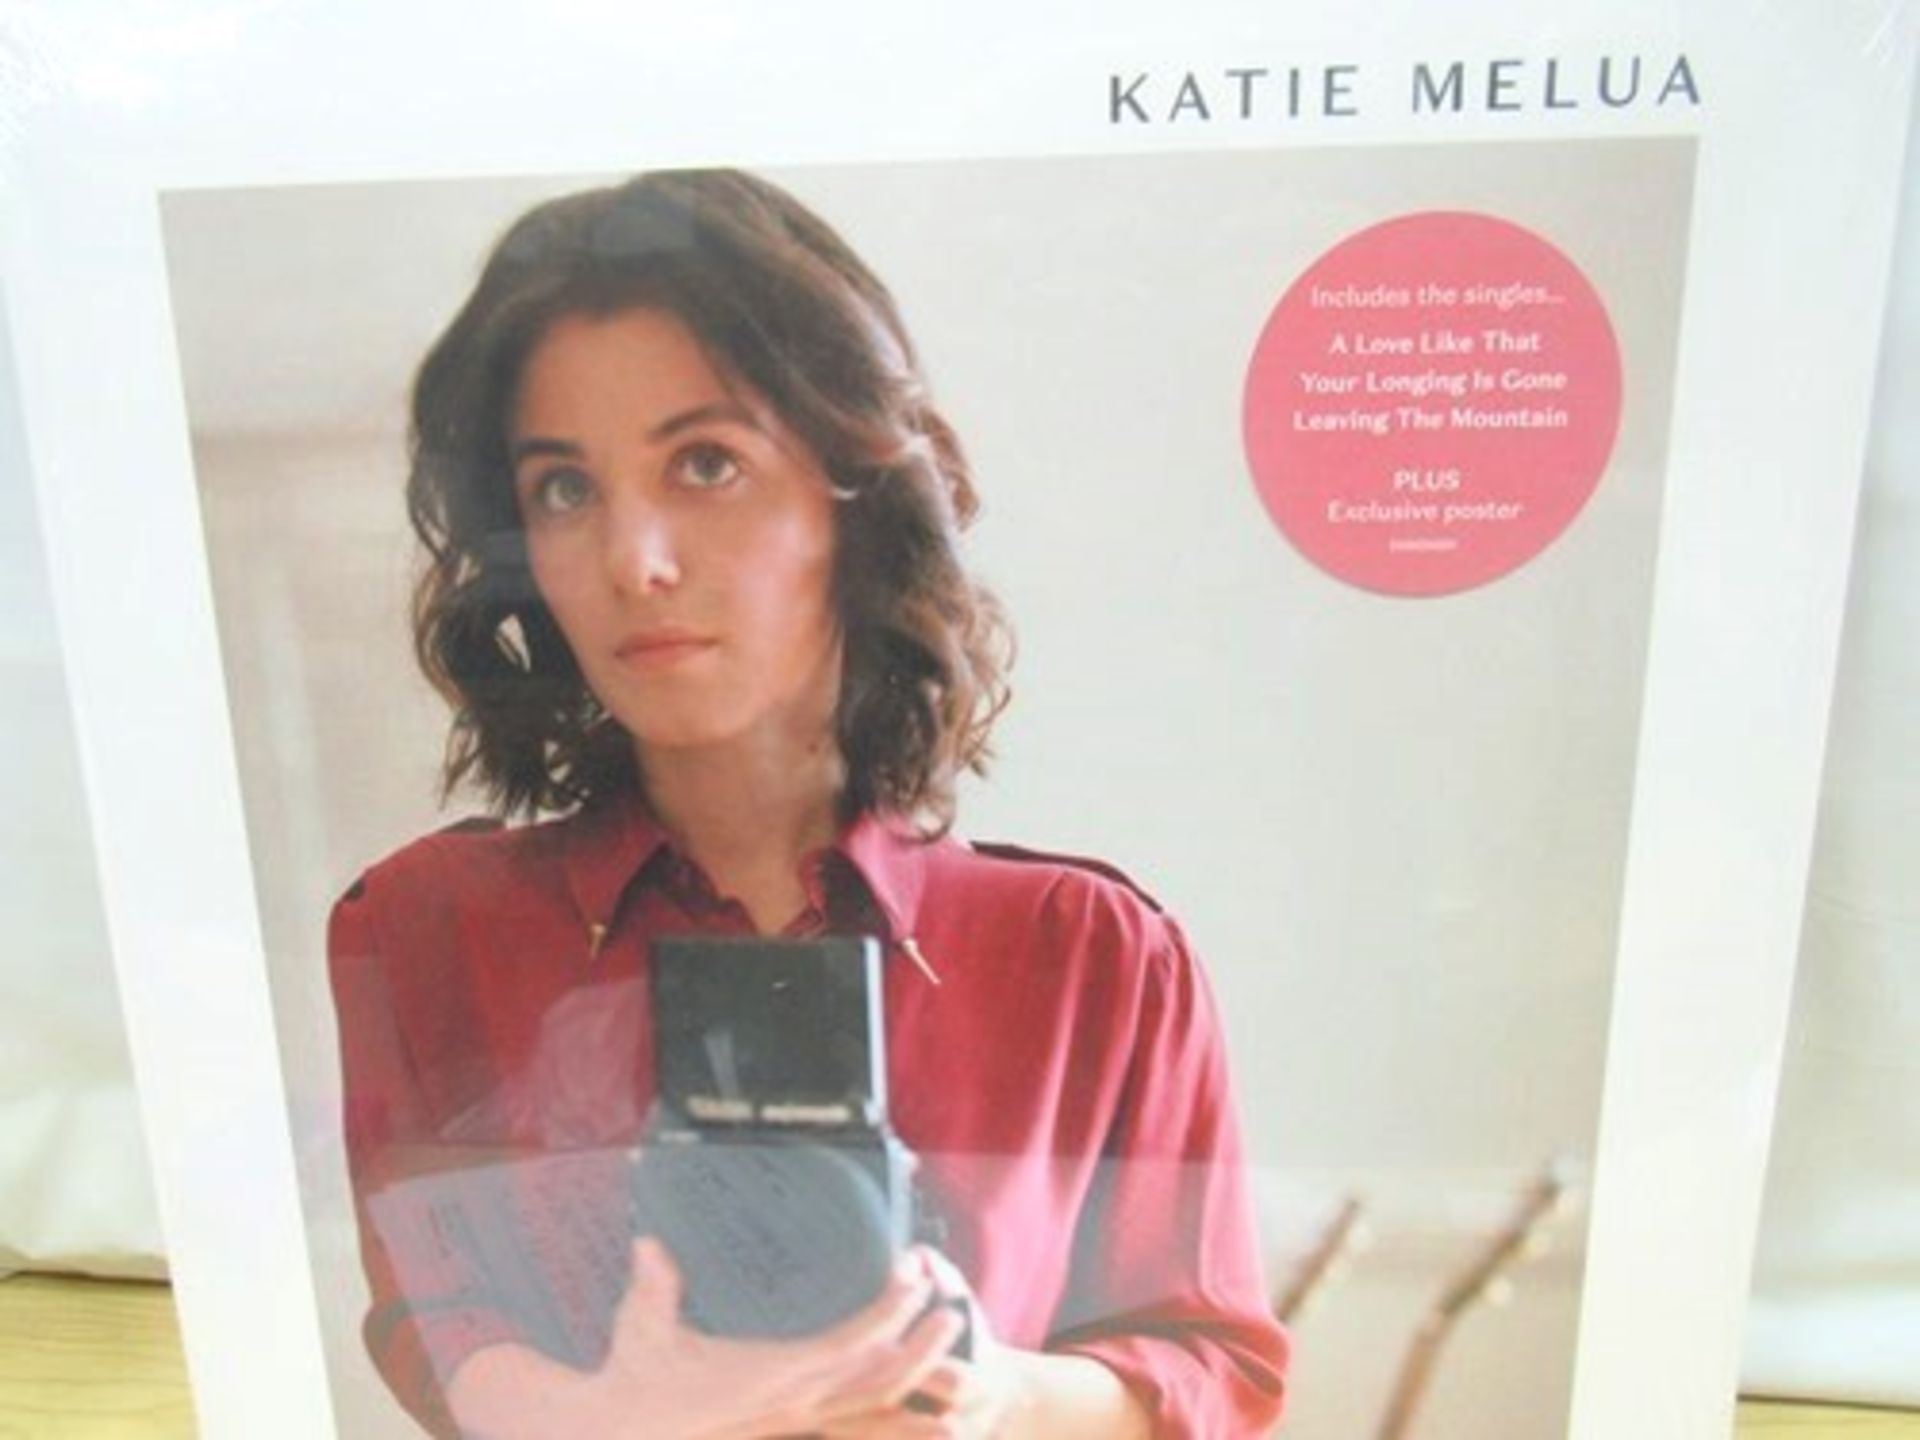 5 x Katie Melua Album No. 8 LP's - Sealed (crecords)